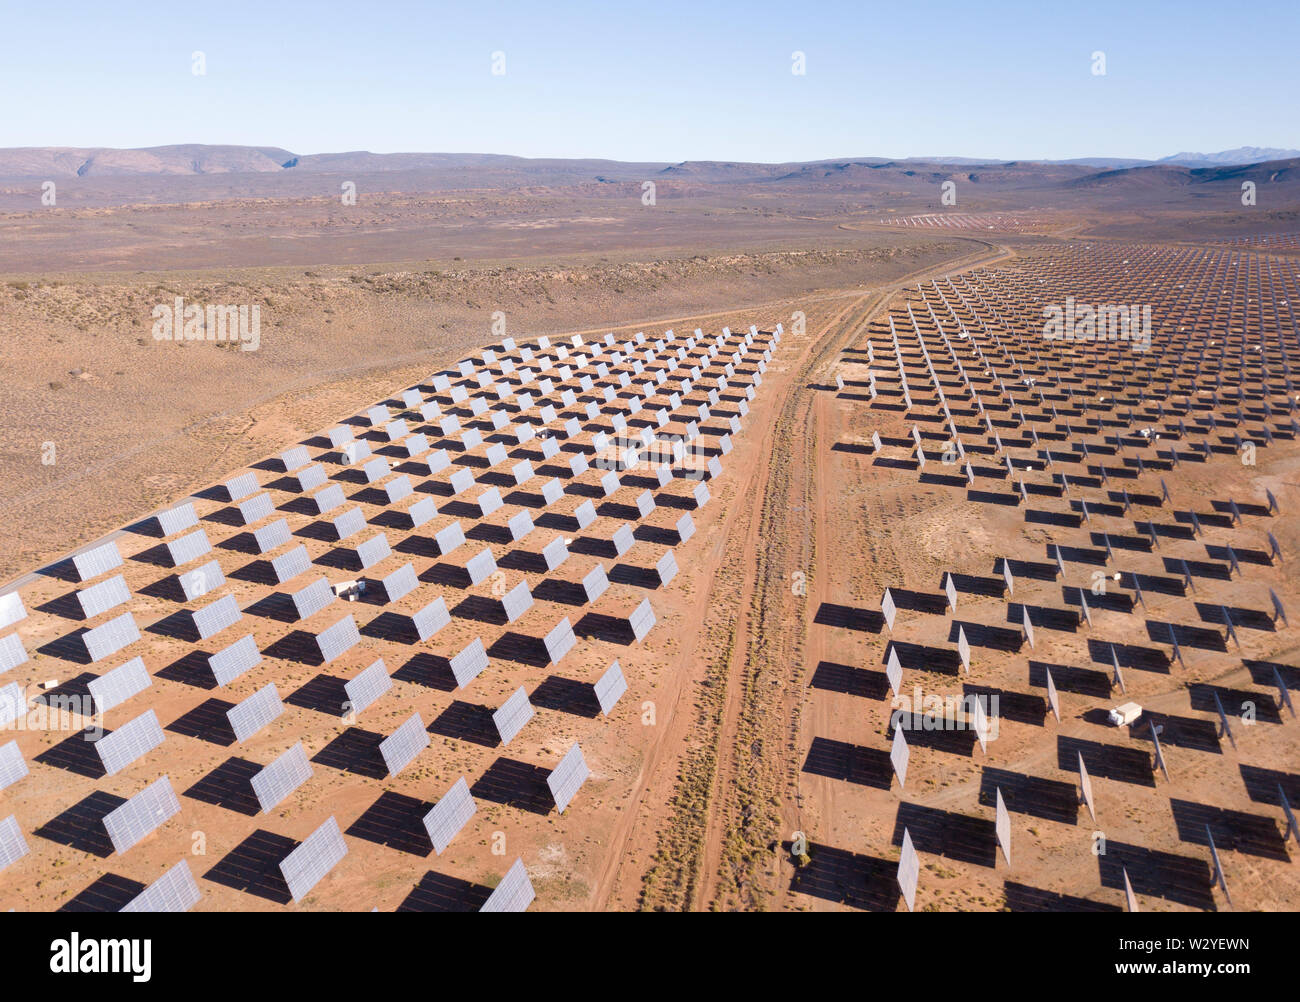 Antenne über Solarzellen in einem trockenen Landschaft Stockfoto